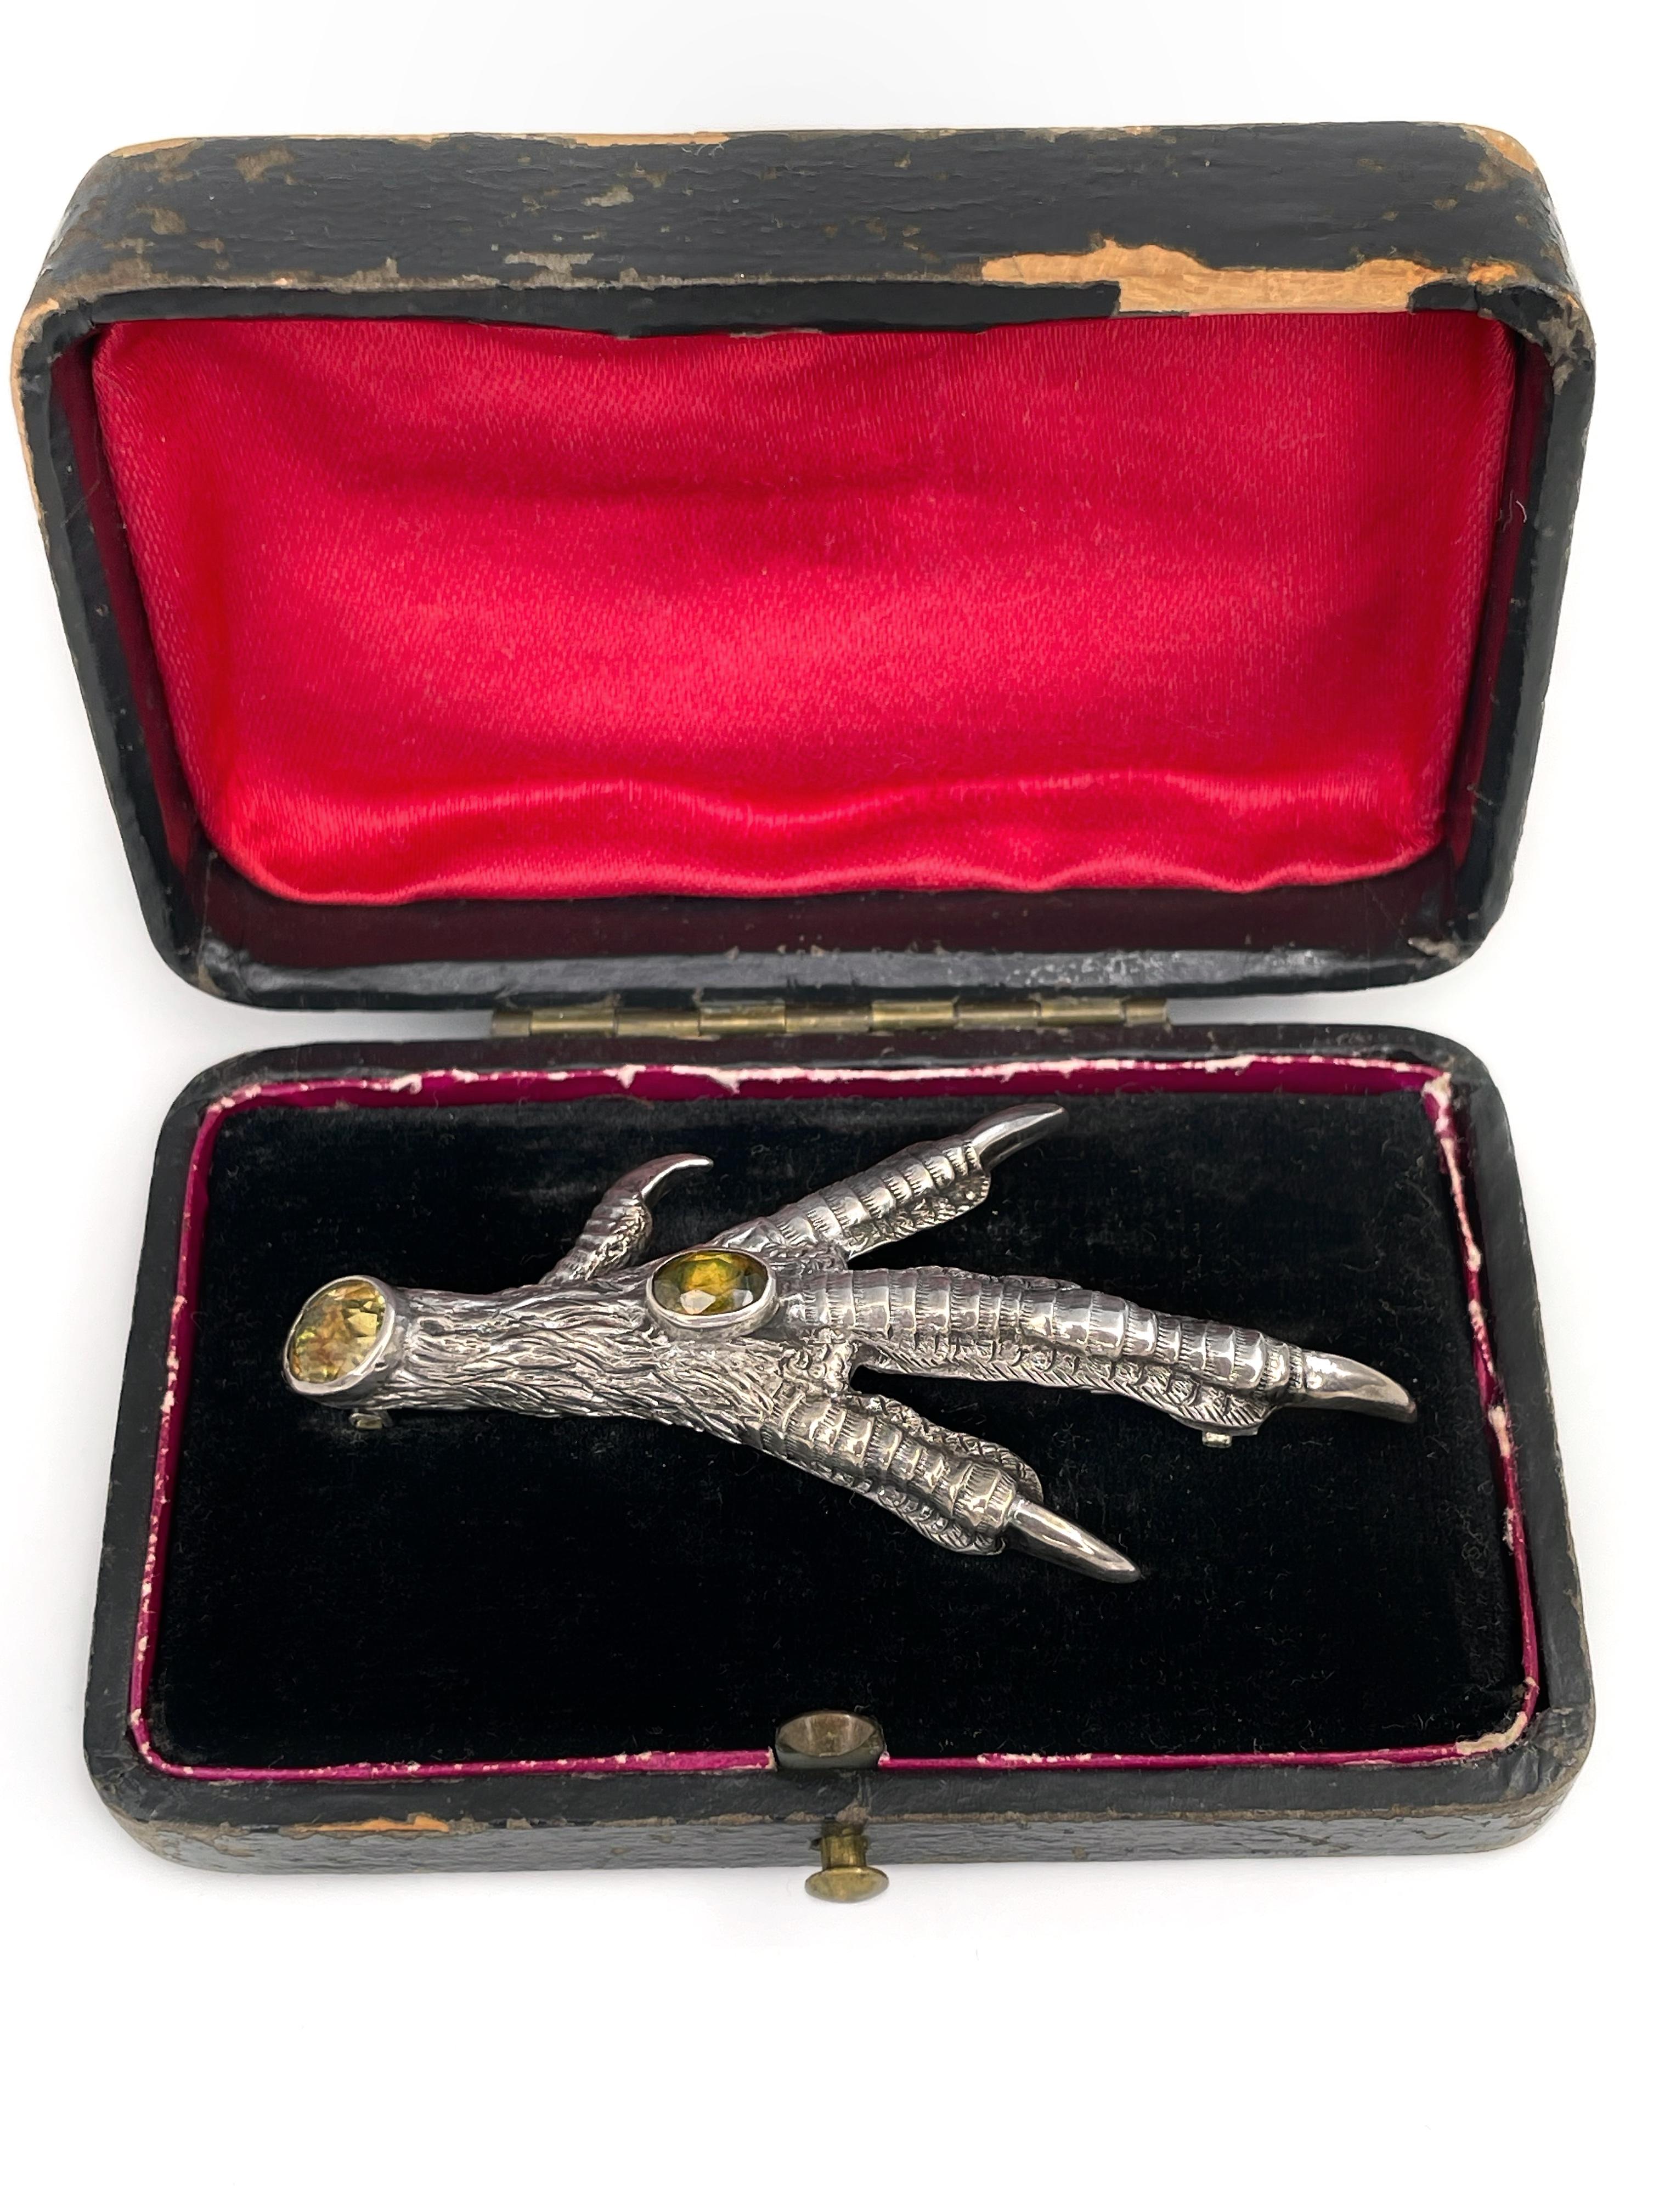 Dies ist ein viktorianischer Vogel Klaue Form Pin Brosche in Silber gefertigt. Um 1890. Das St�ück ist mit Zitrinen besetzt.

Hat einen C-Verschluss. 
Kommt mit einer originalen antiken Schachtel.

Gewicht: 6.45g
Größe: 6x3cm

---

Wenn Sie Fragen